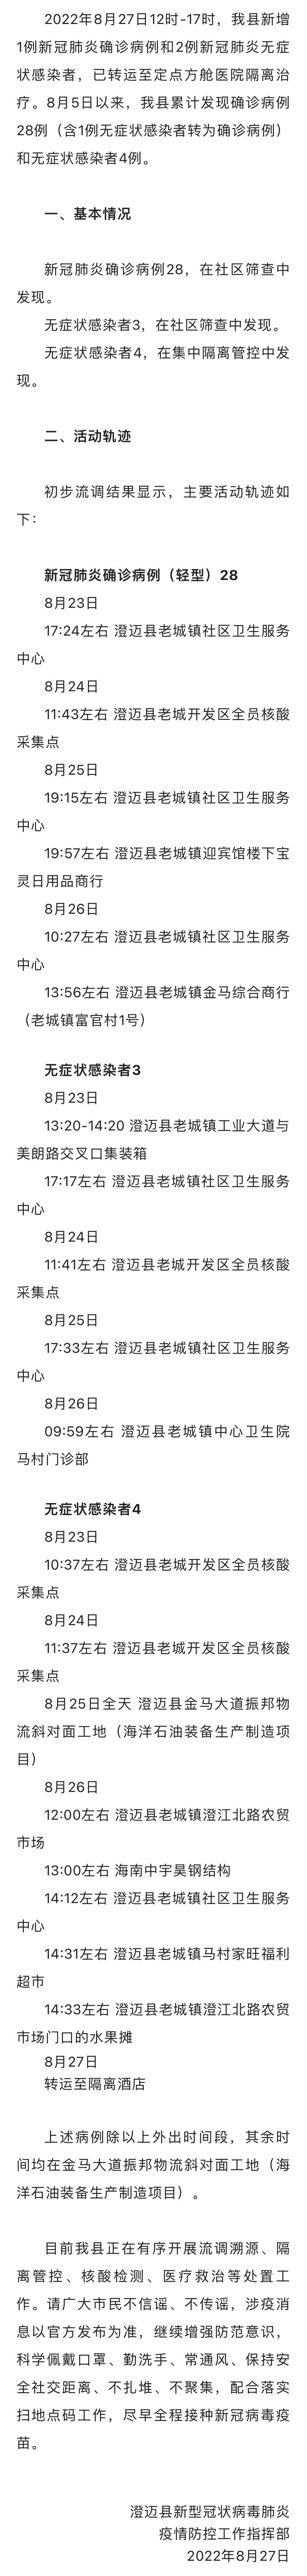 8月27日12时-17时海南省澄迈县新增1例确诊病例和2例无症状感染者